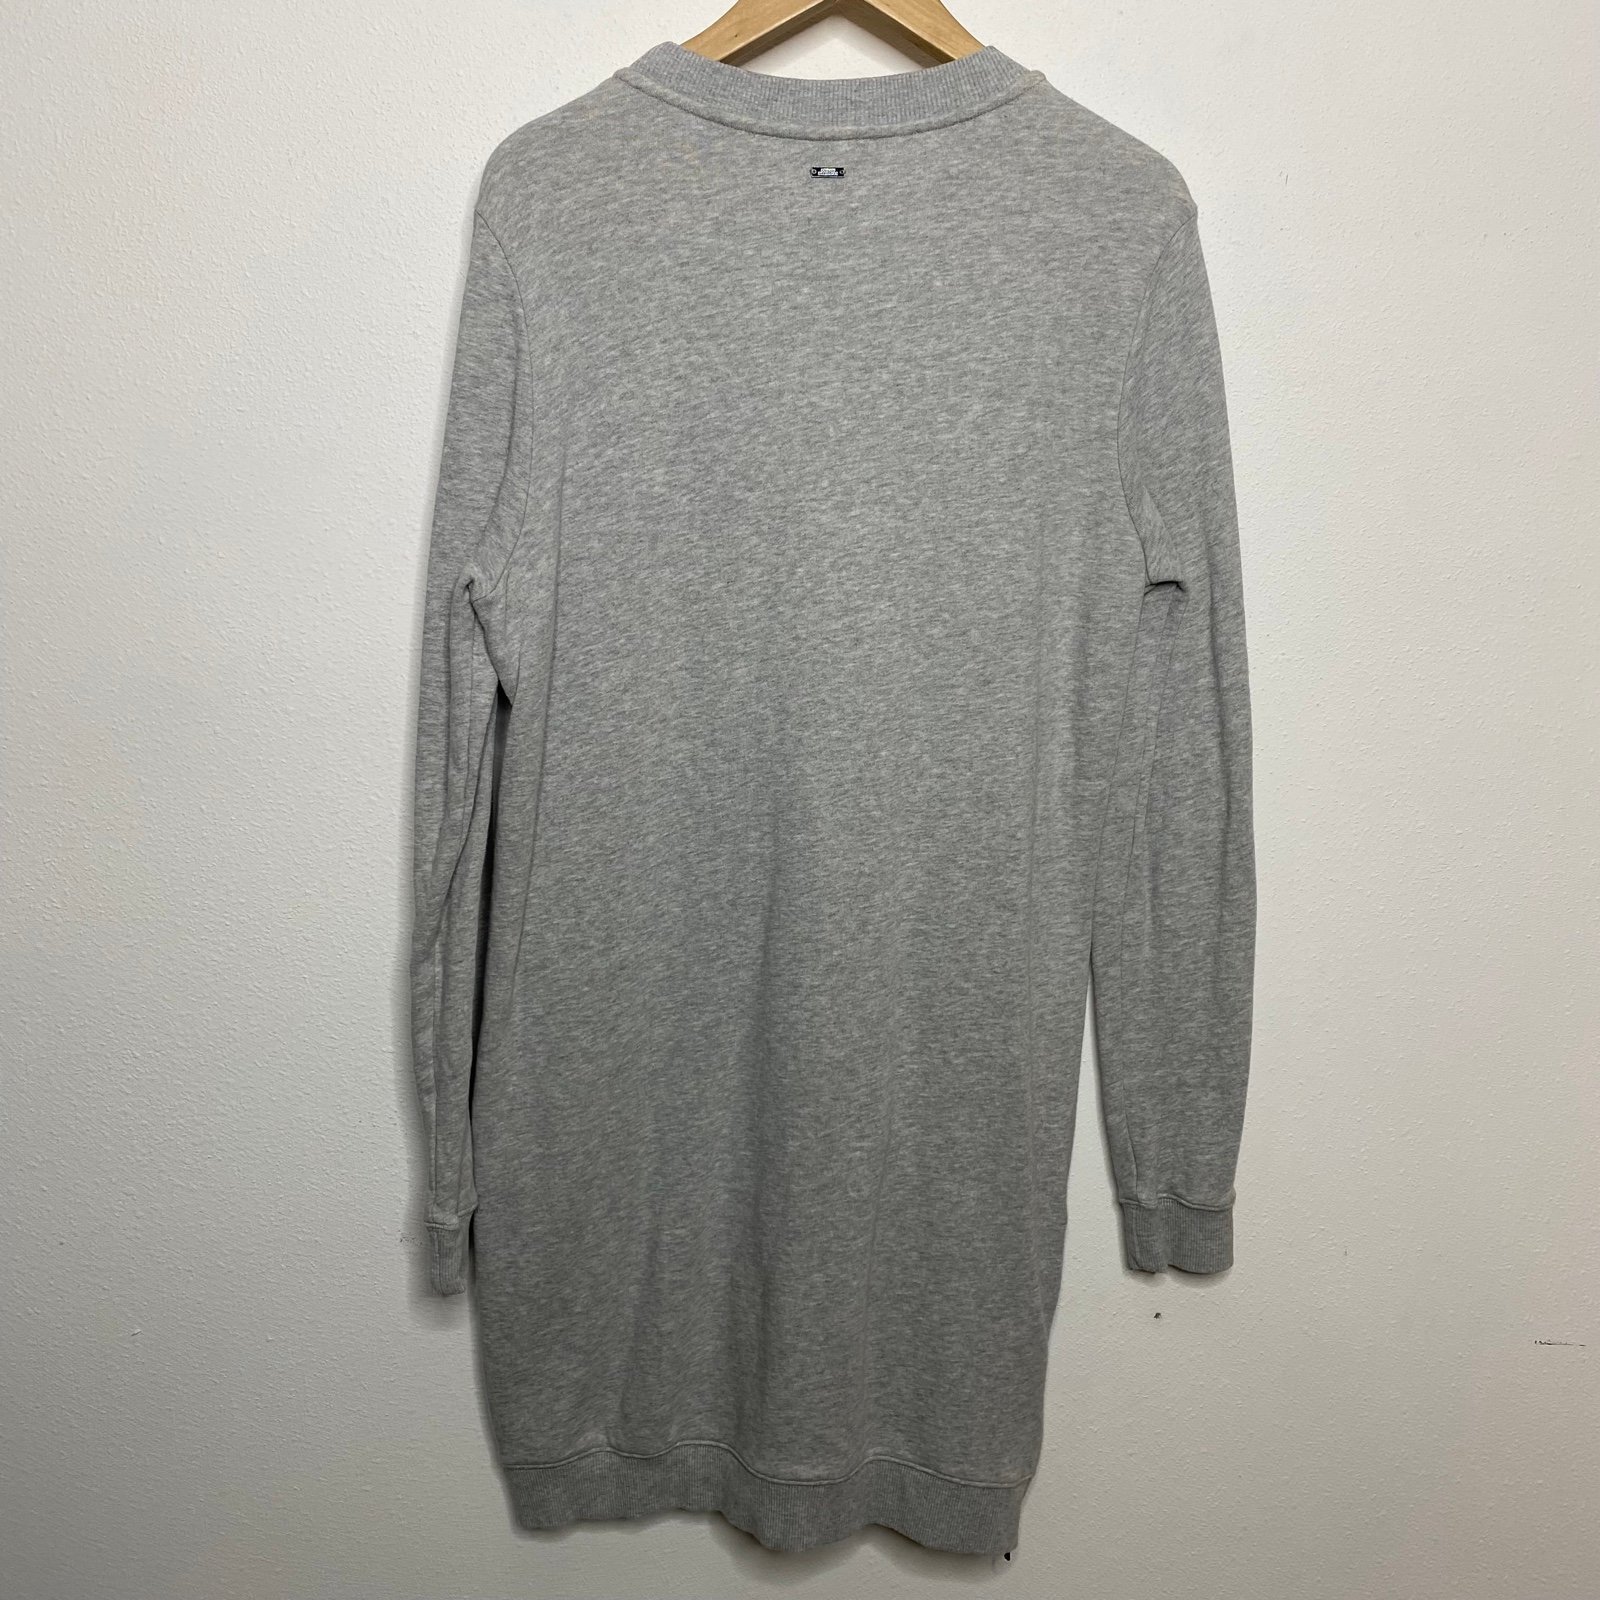 Classic Armani exchange sweater dress neAdvgwYF High Quaity